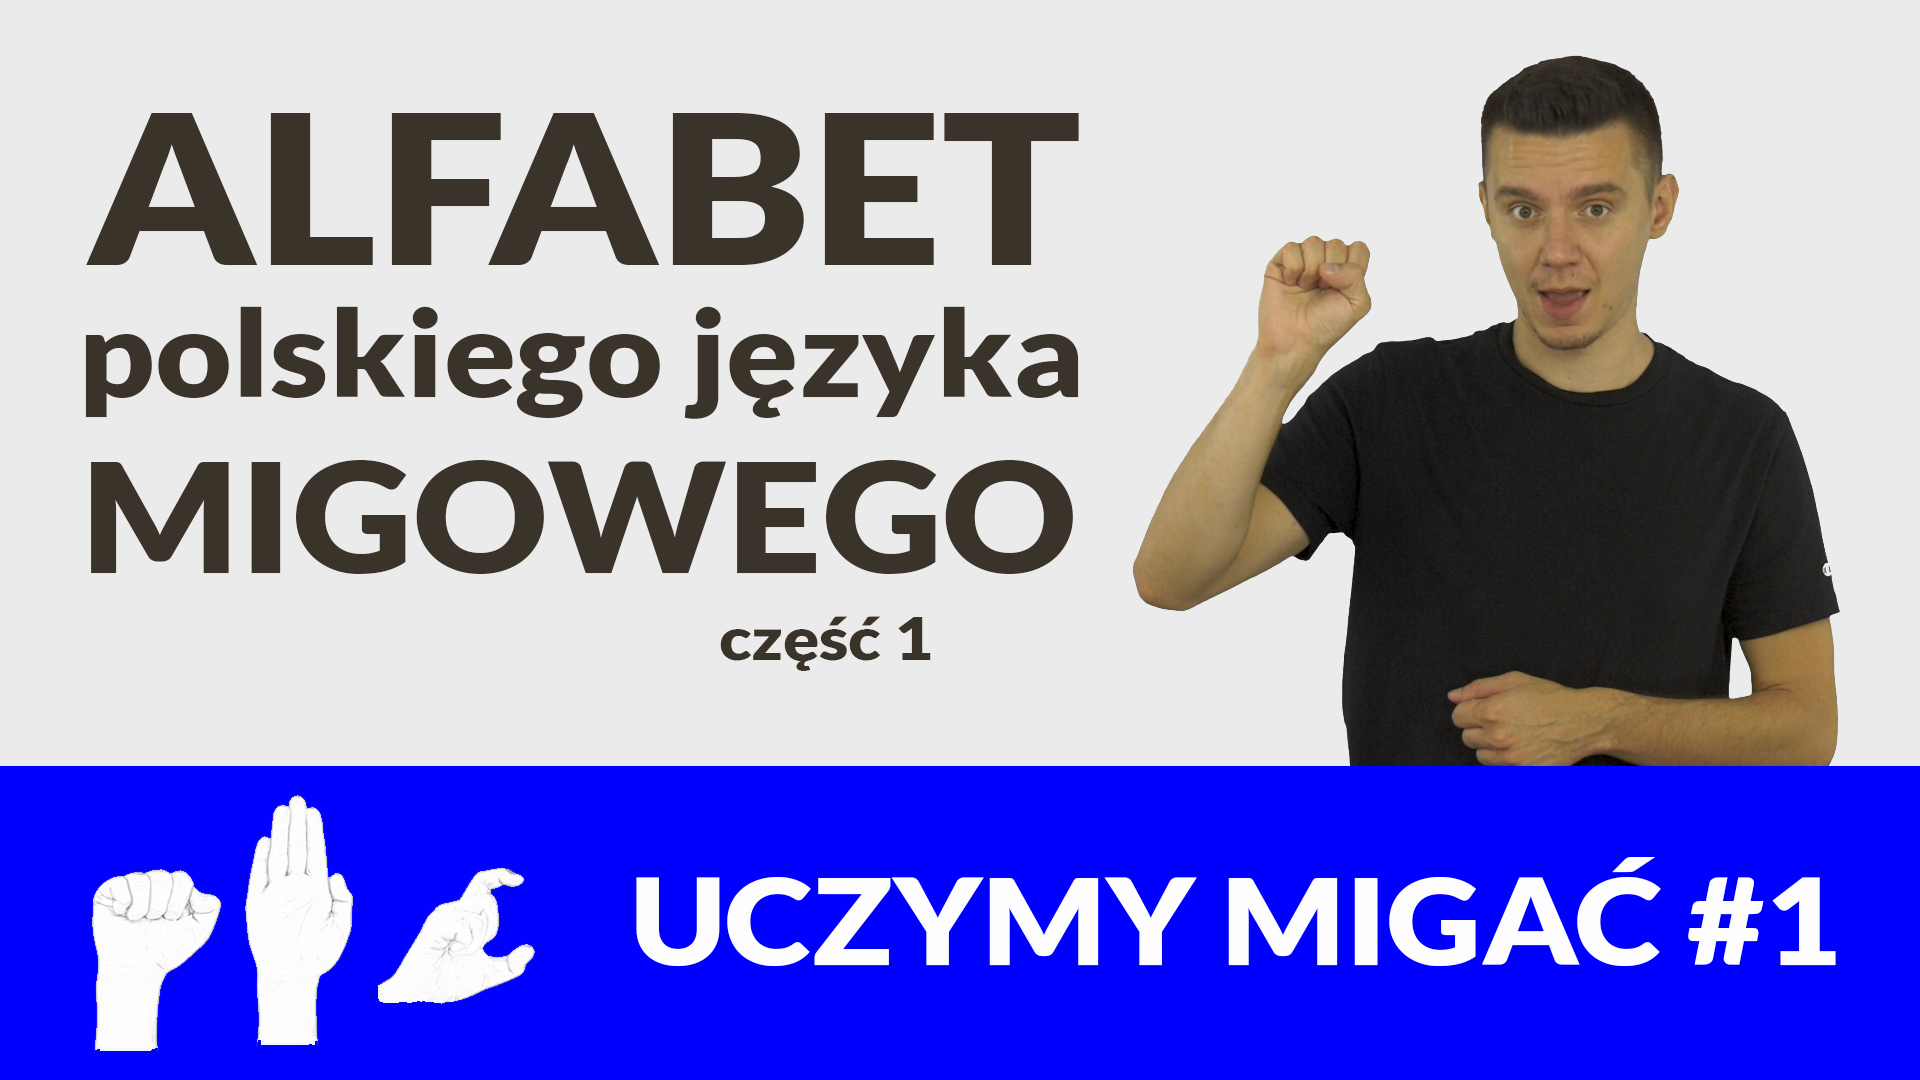 Uczymy migac #1 — alfabet polskiego jezyka migowego, część 1